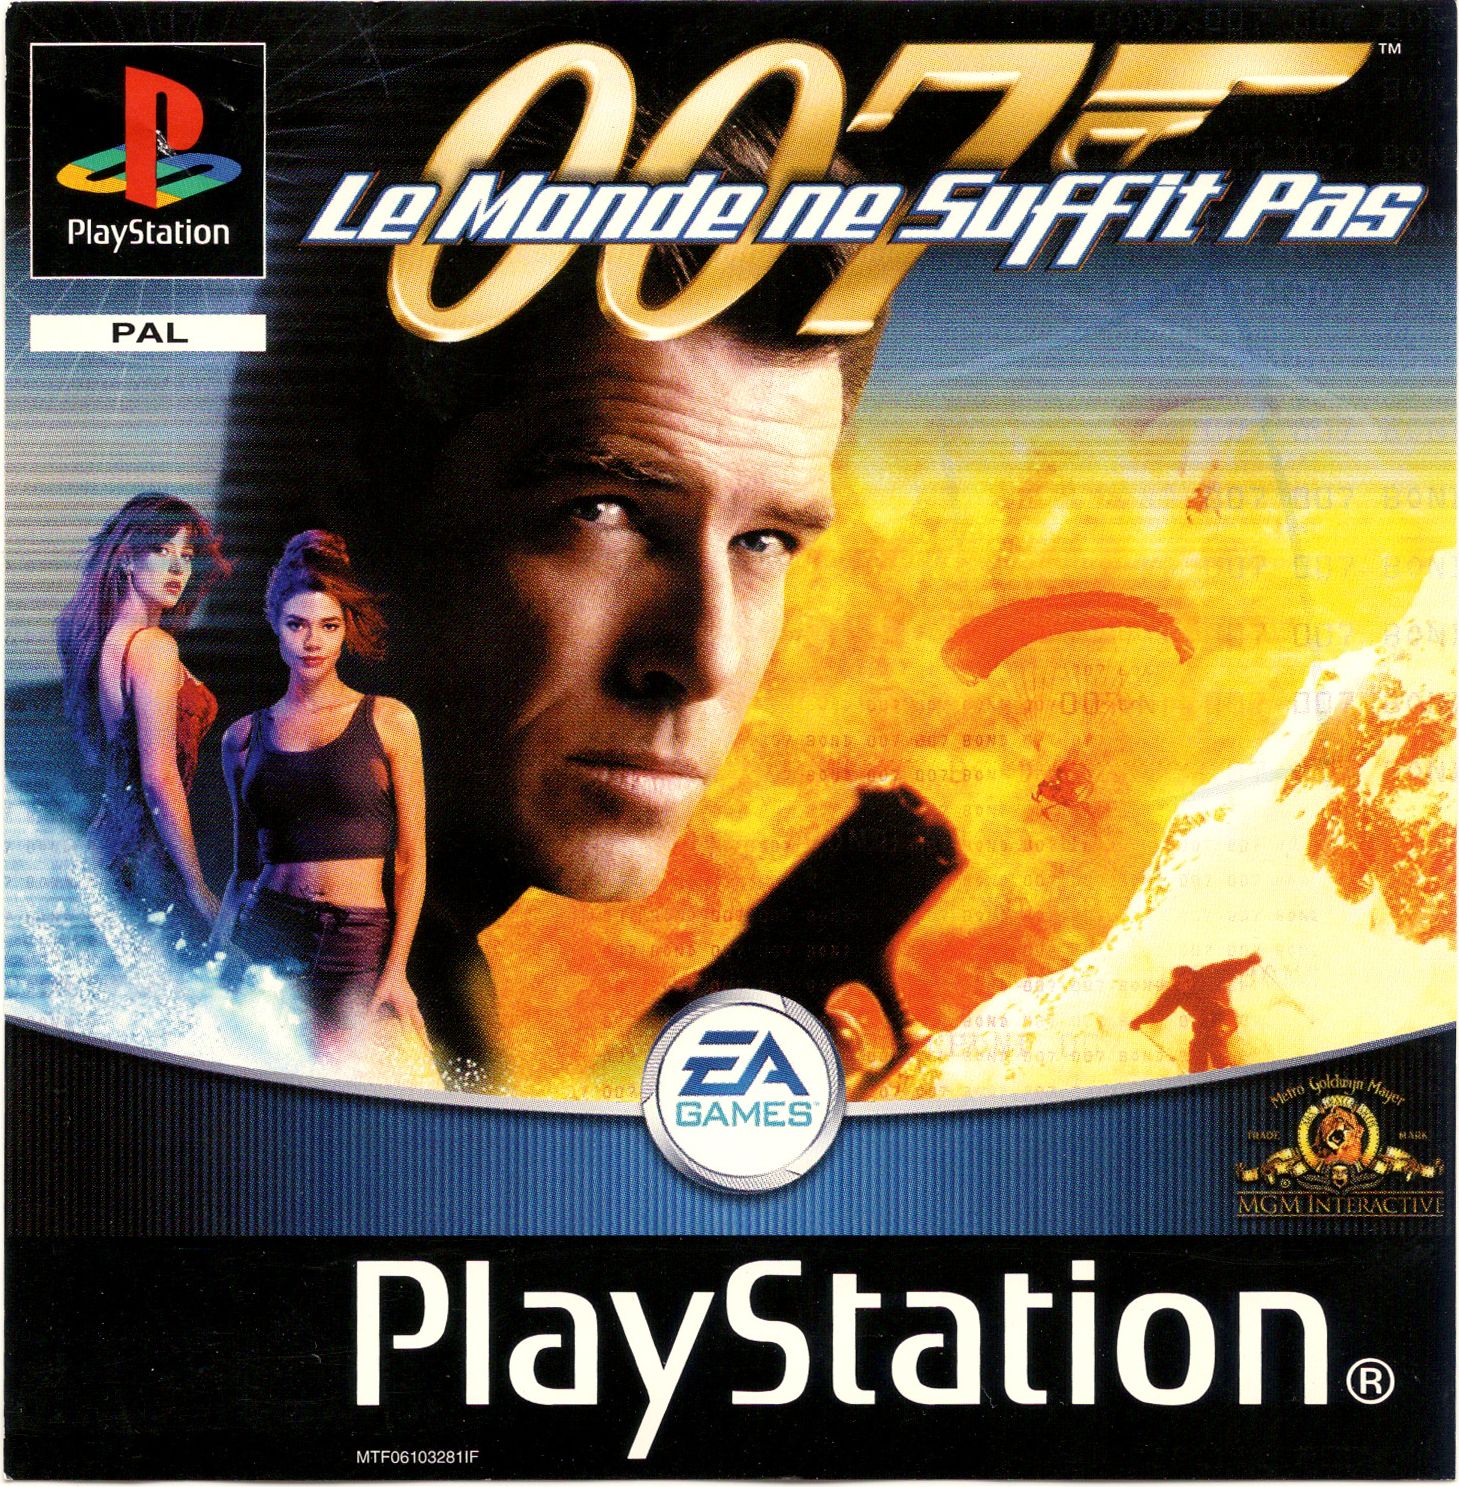 007 - Le Monde Ne Suffit Pas PSX cover